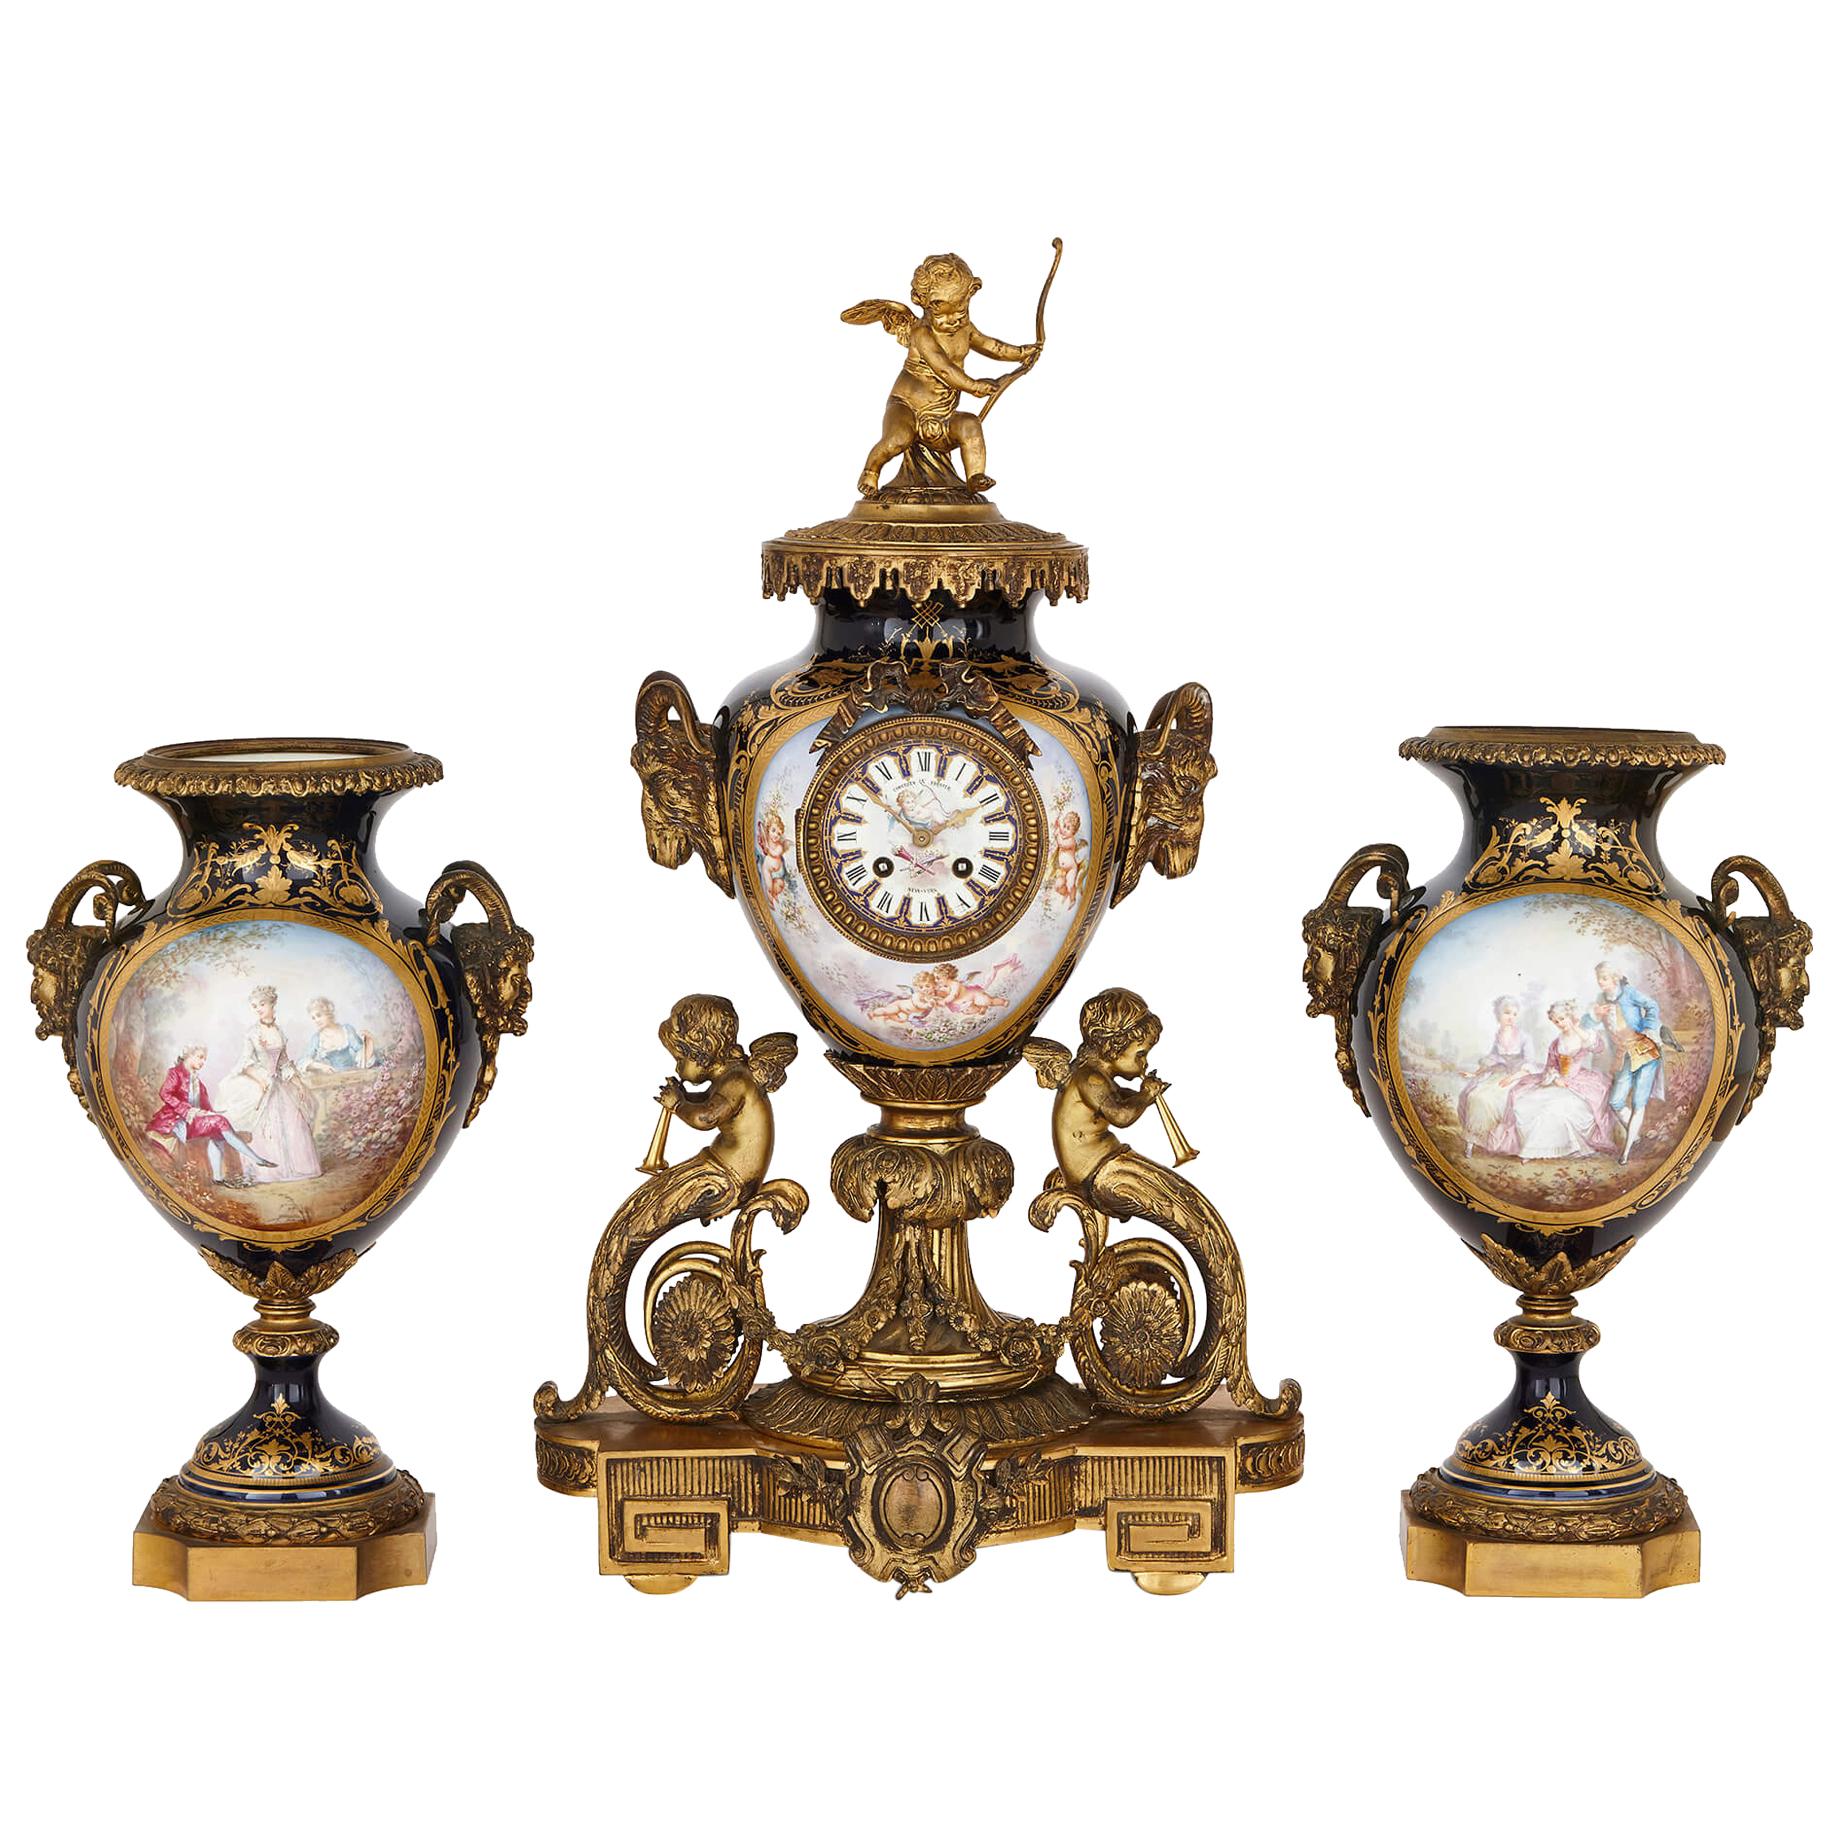 Garnitures d'horloge de style rococo en bronze doré et porcelaine de Sèvres